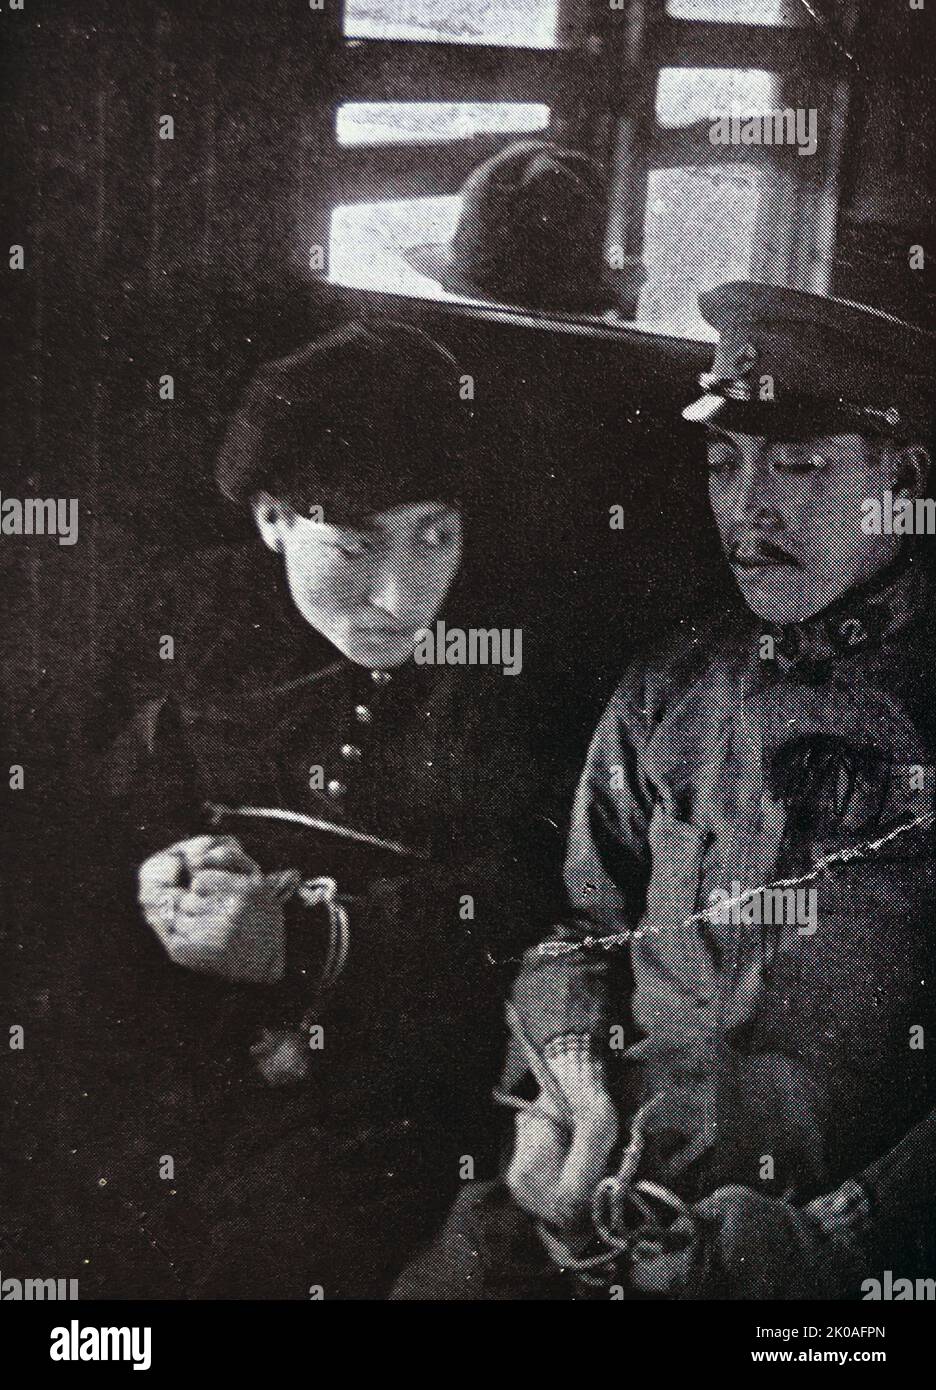 A Large Tomb, una película silenciosa coreana, representada como una de las películas de resistencia durante la ocupación japonesa en Corea, antes de la Independencia en agosto de 1945. Foto de stock